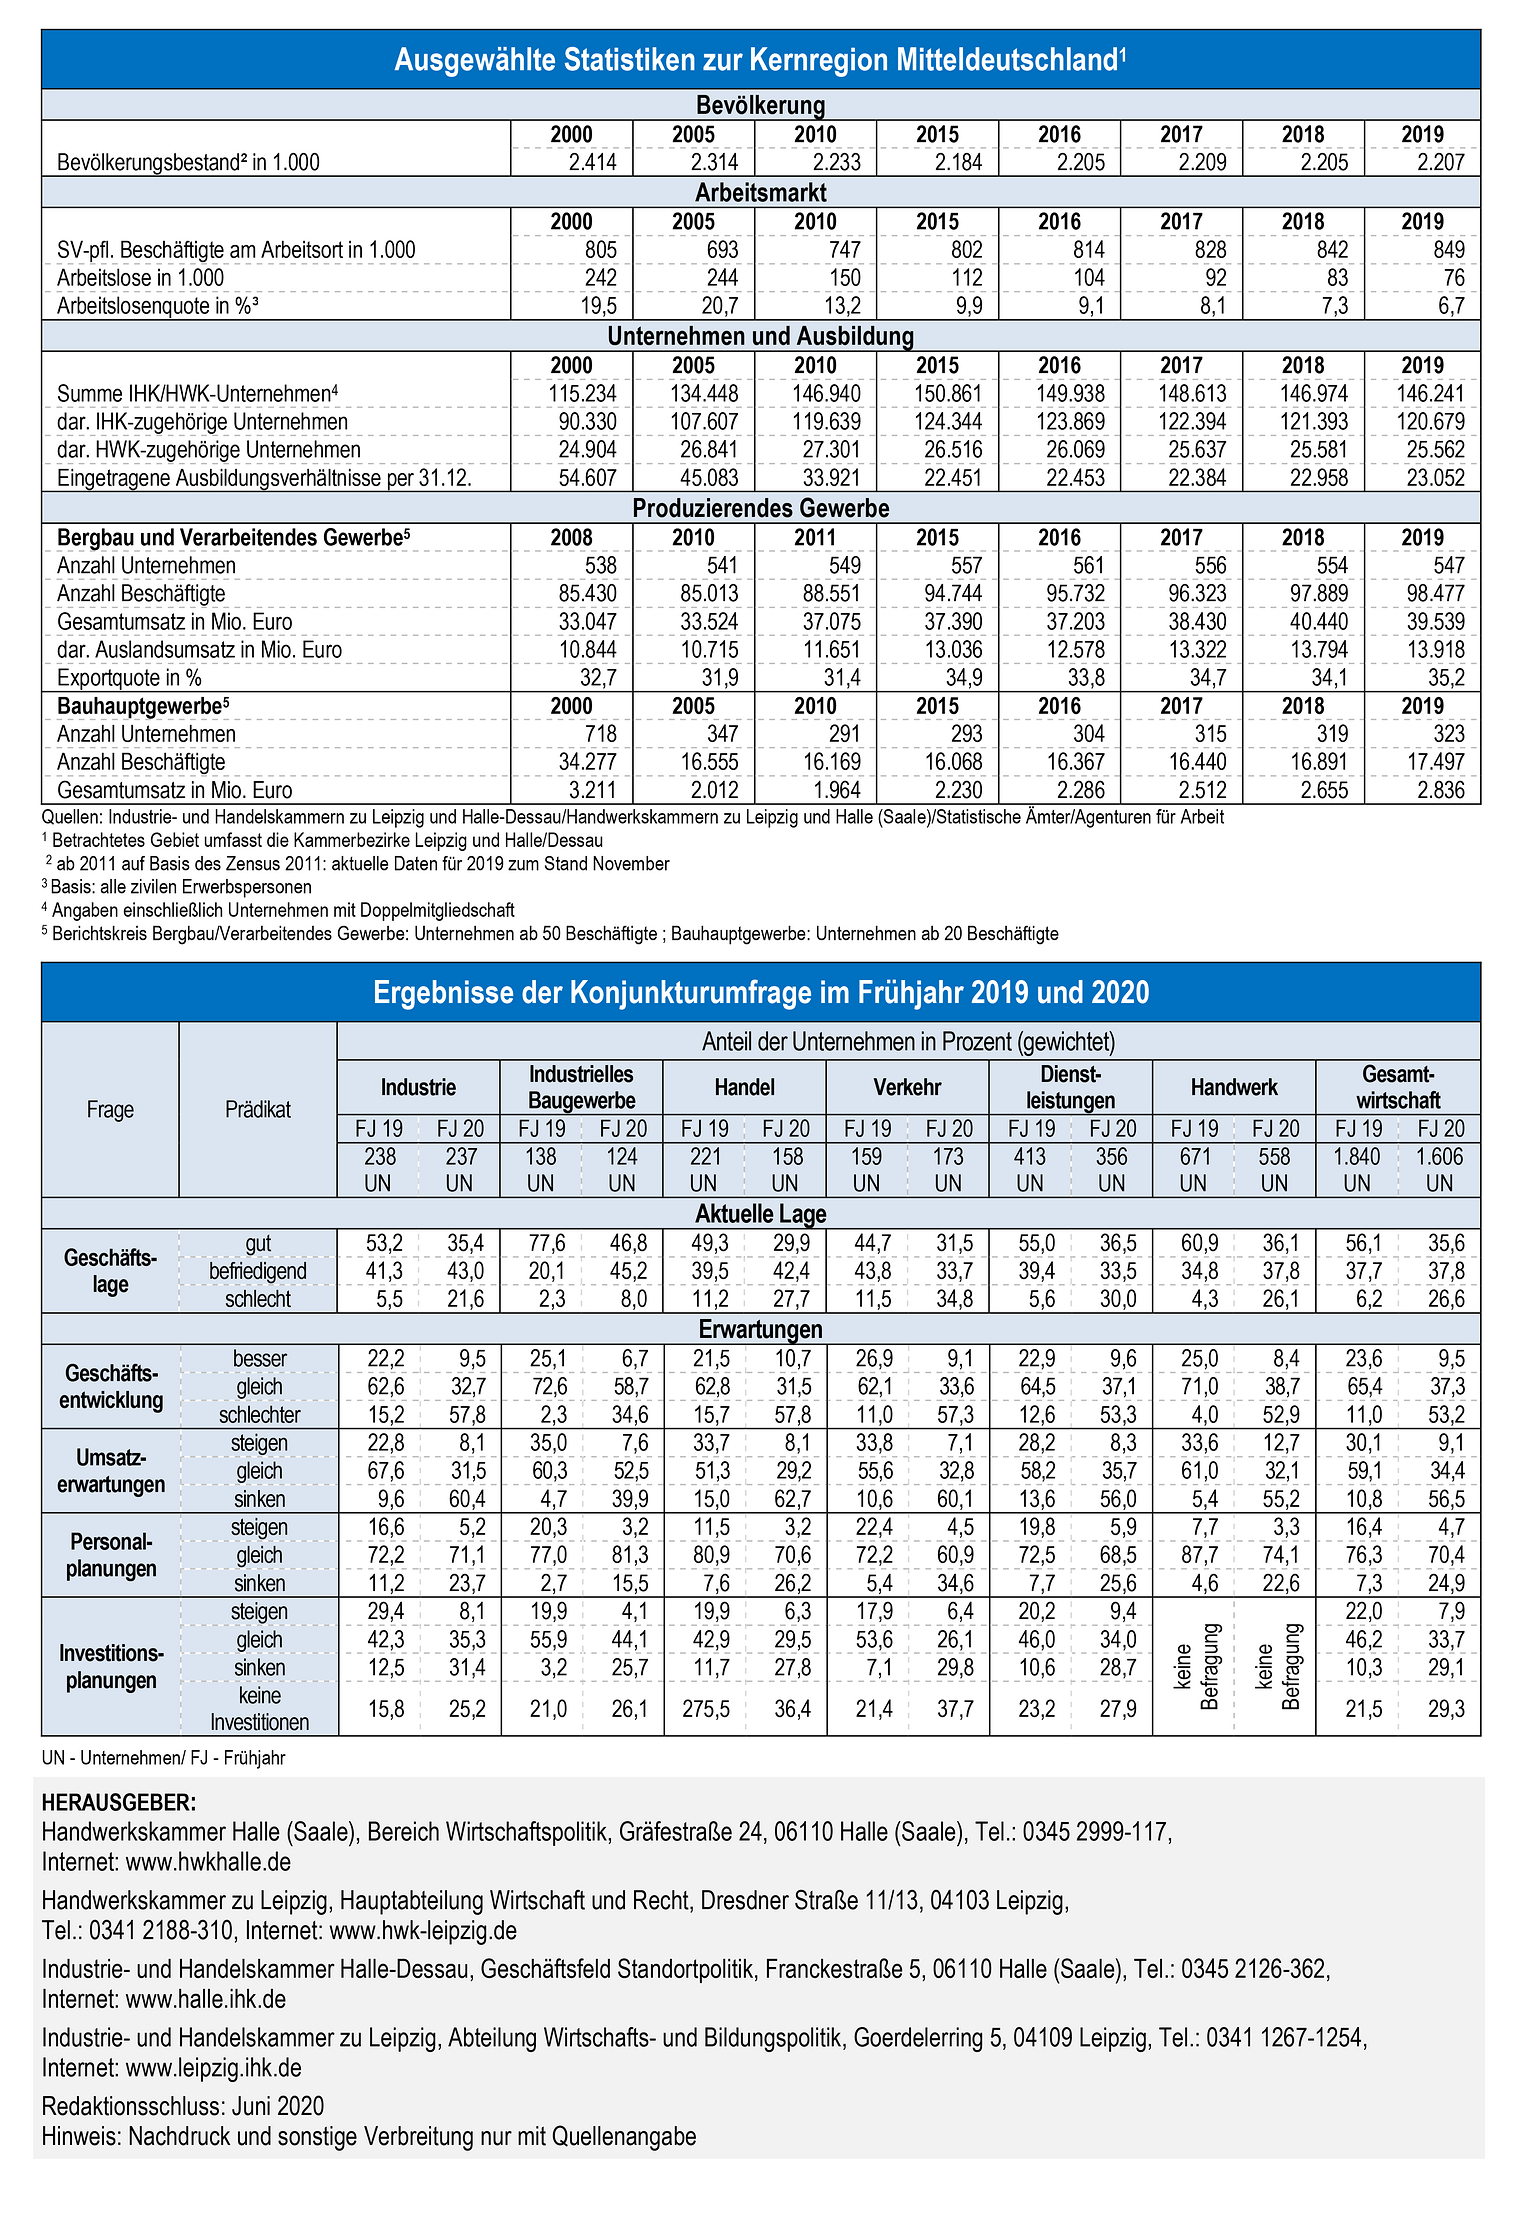 Wirtschaft in Mitteldeutschland 2020 / Statistiken